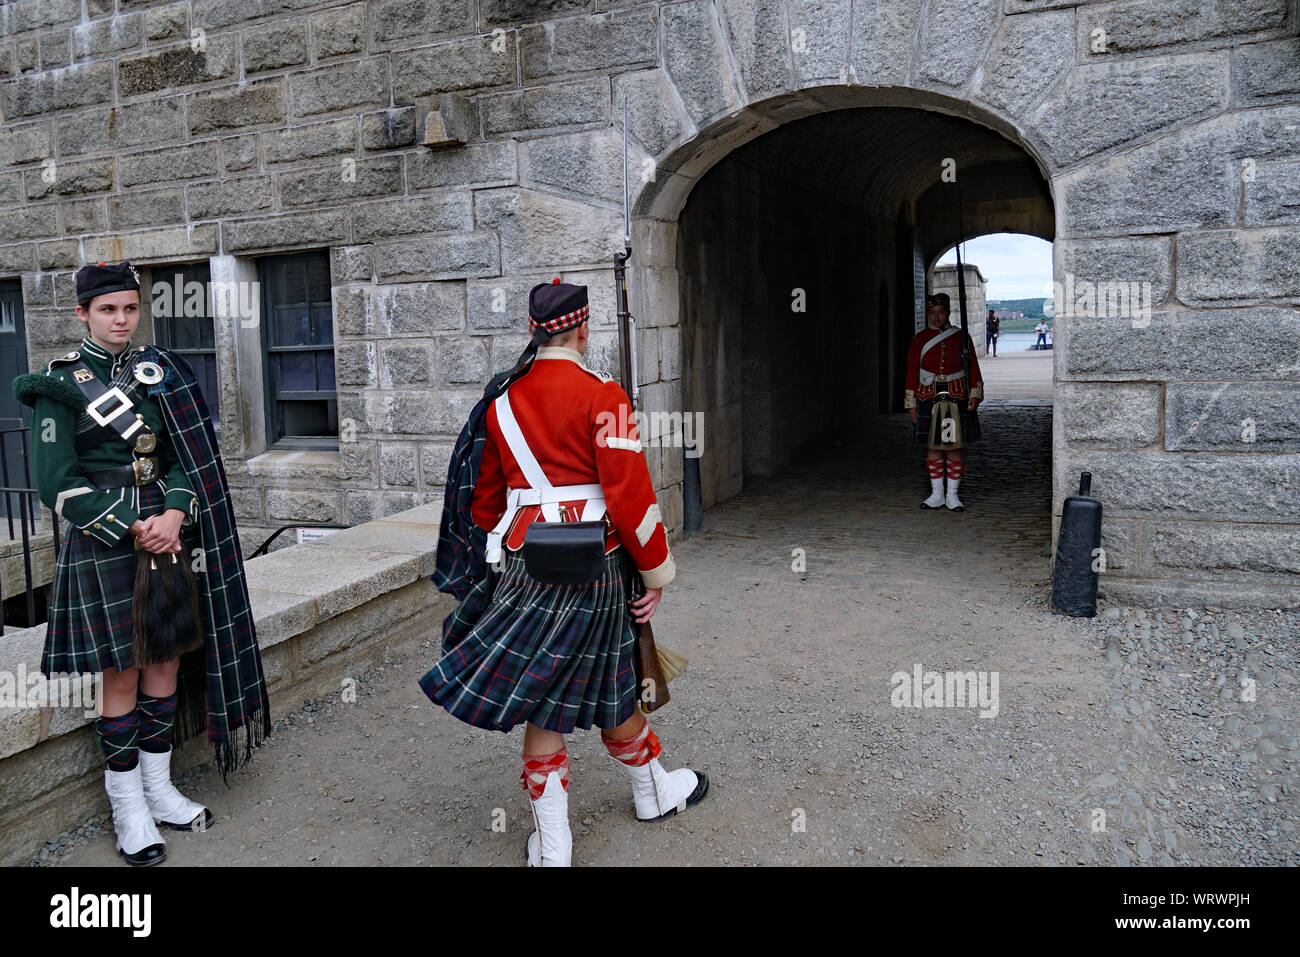 HALIFAX, Nova Scotia - AUGUST 2019: Soldaten in traditionellen schottischen Uniformen durch die Wachablösung in der Zitadelle. Stockfoto